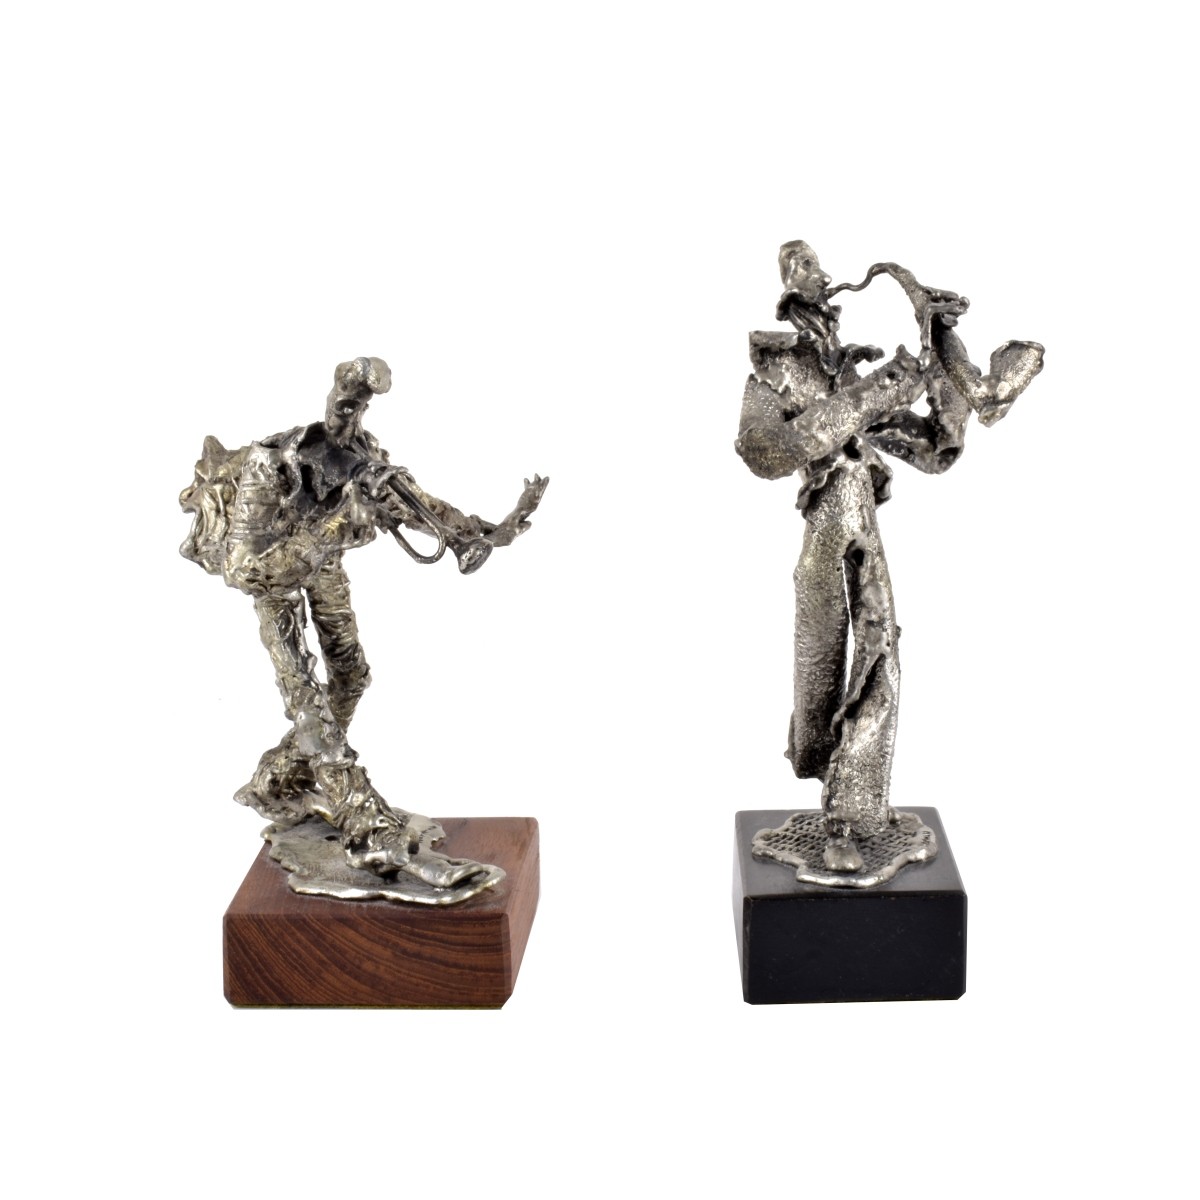 Norman Rabinowitz Metal Sculptures